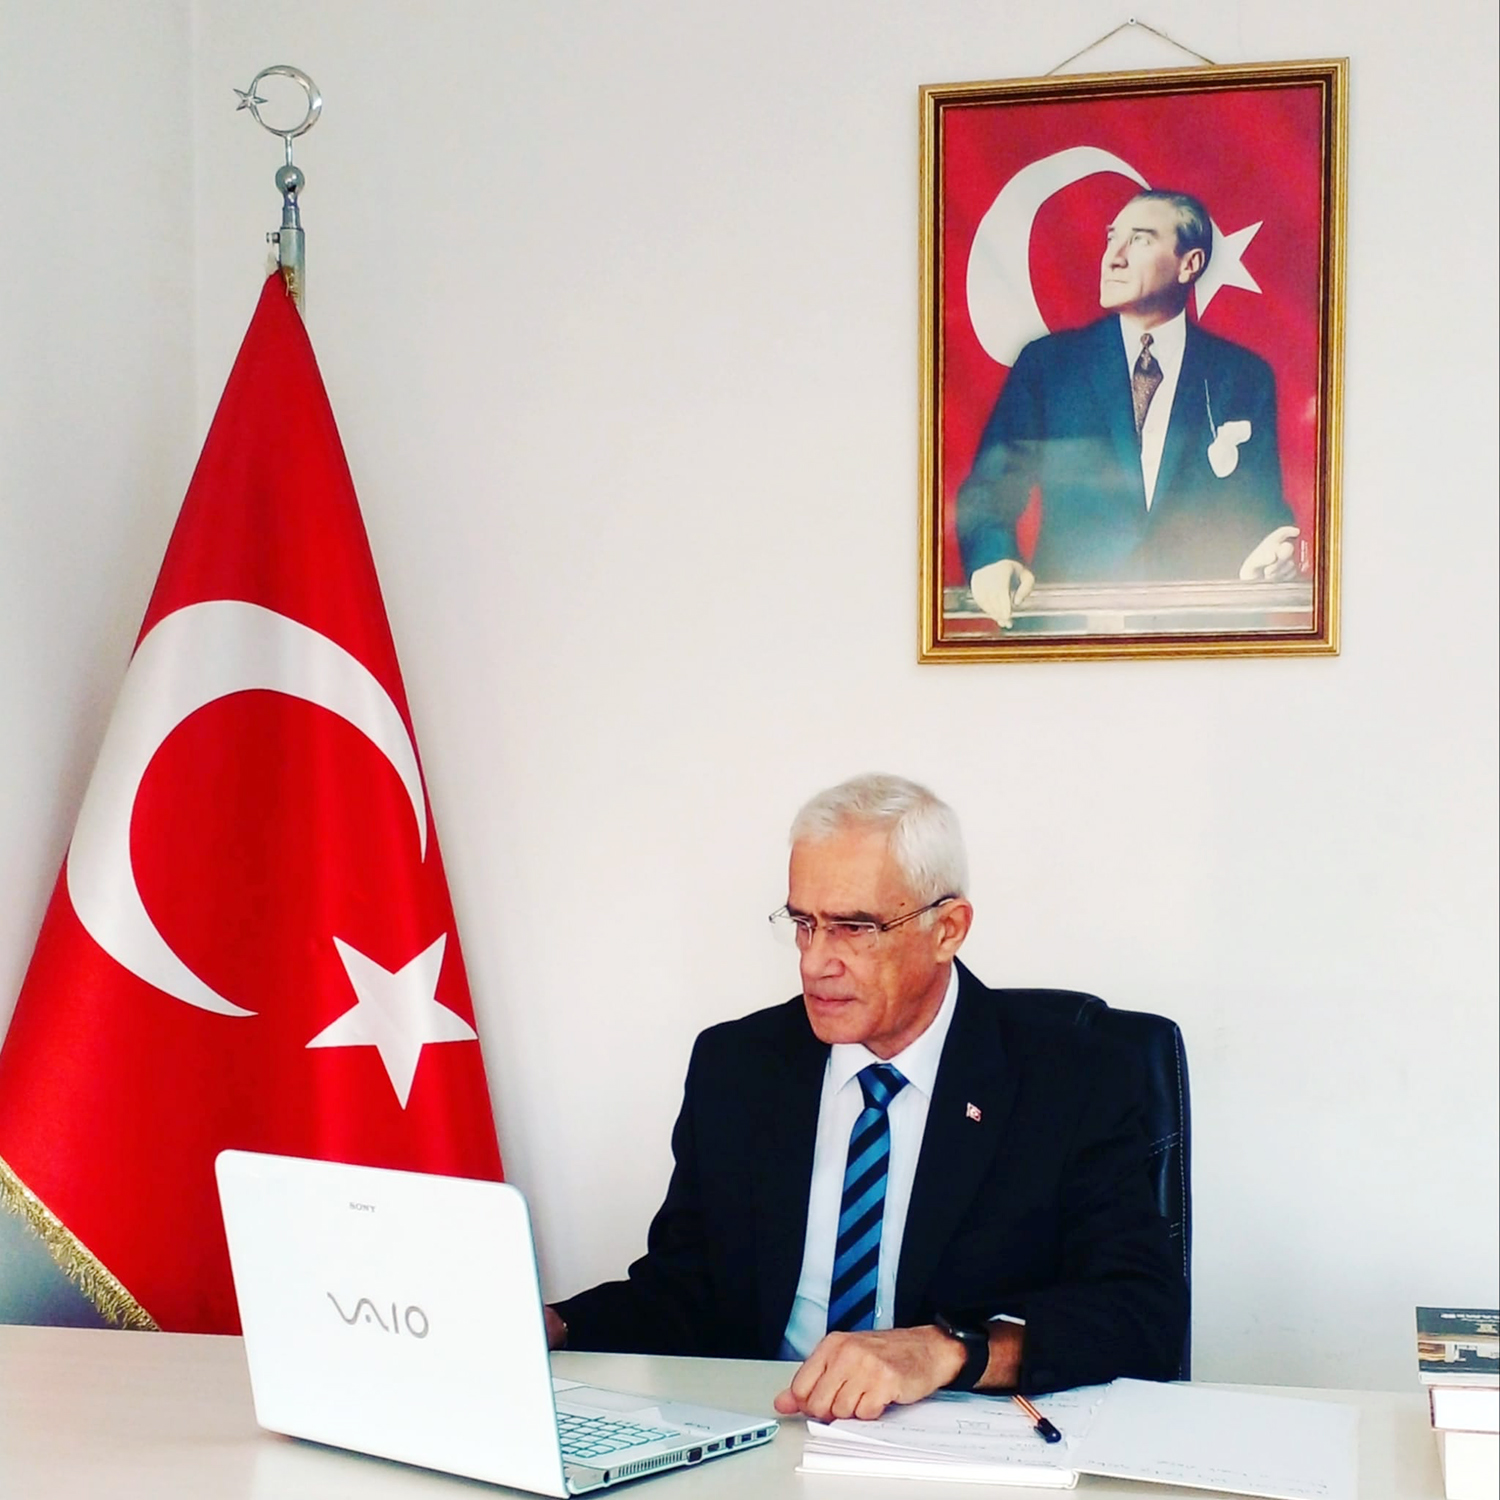 Ahmet Semih Tulay